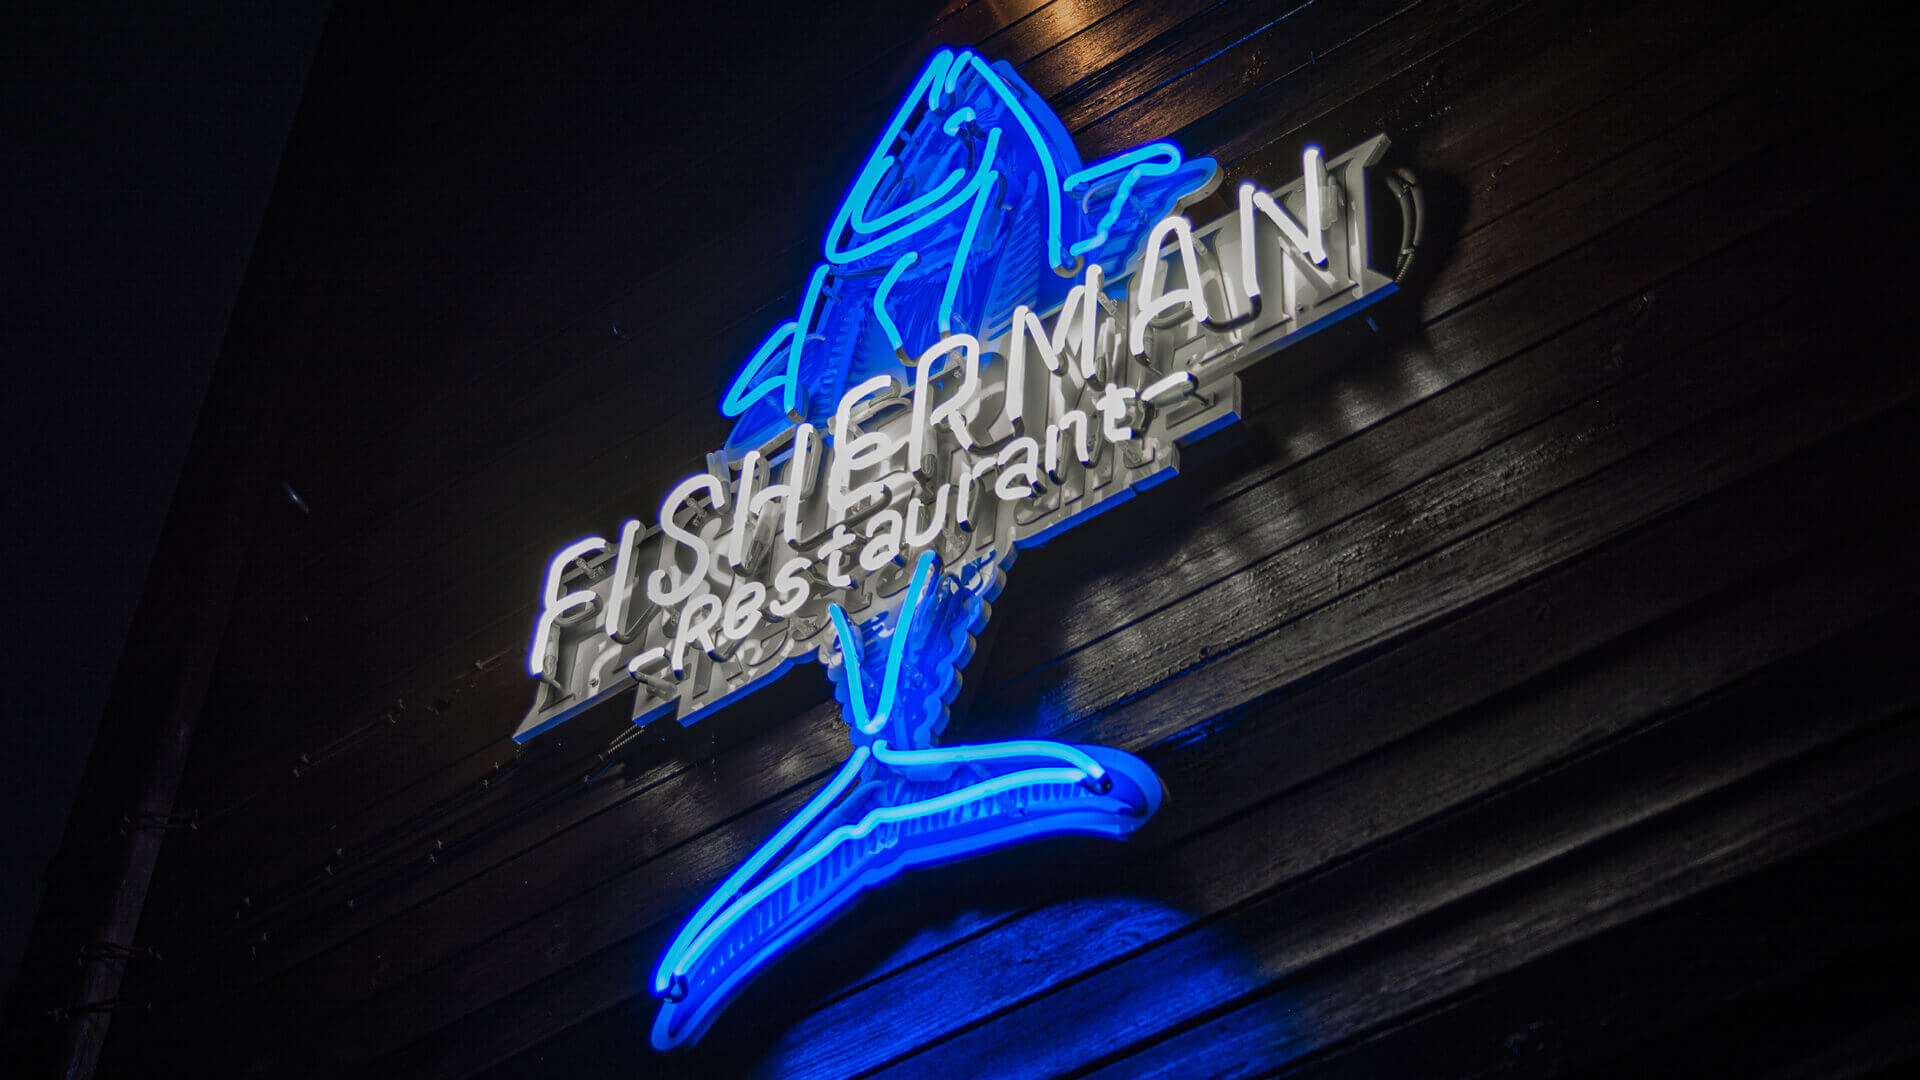 pescador pescador hombre - pescador-restaurante-neón-azul-blanco-neón-en-la-pared-restaurante-neón-en-escritorio-neón-en-alta-iluminación-pescador-neón-en-la-entrada-sopot (28)  